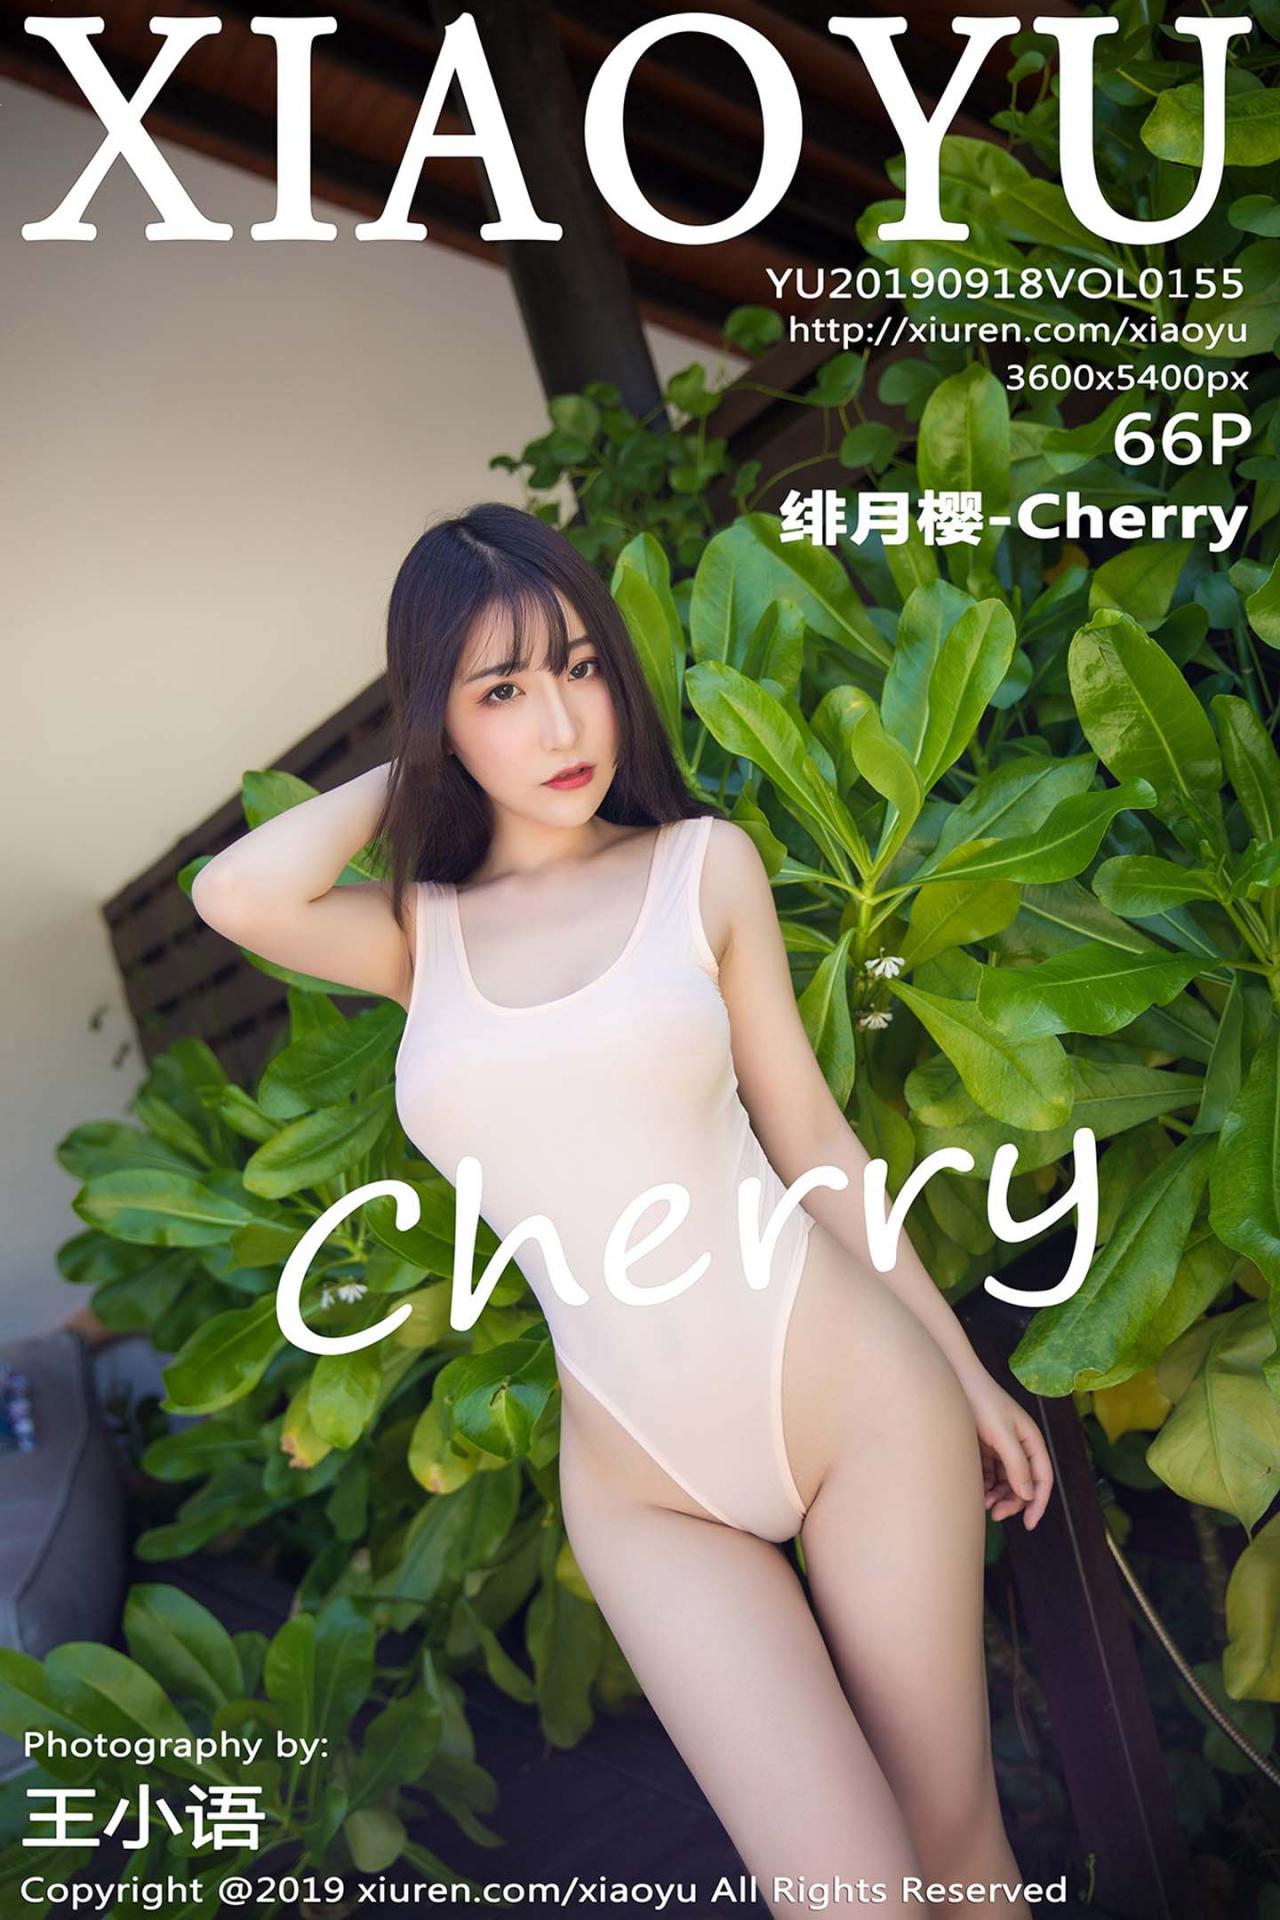 [XIAOYU语画界] 2019.09.18 VOL.155 绯月樱-Cherry [66+1P]